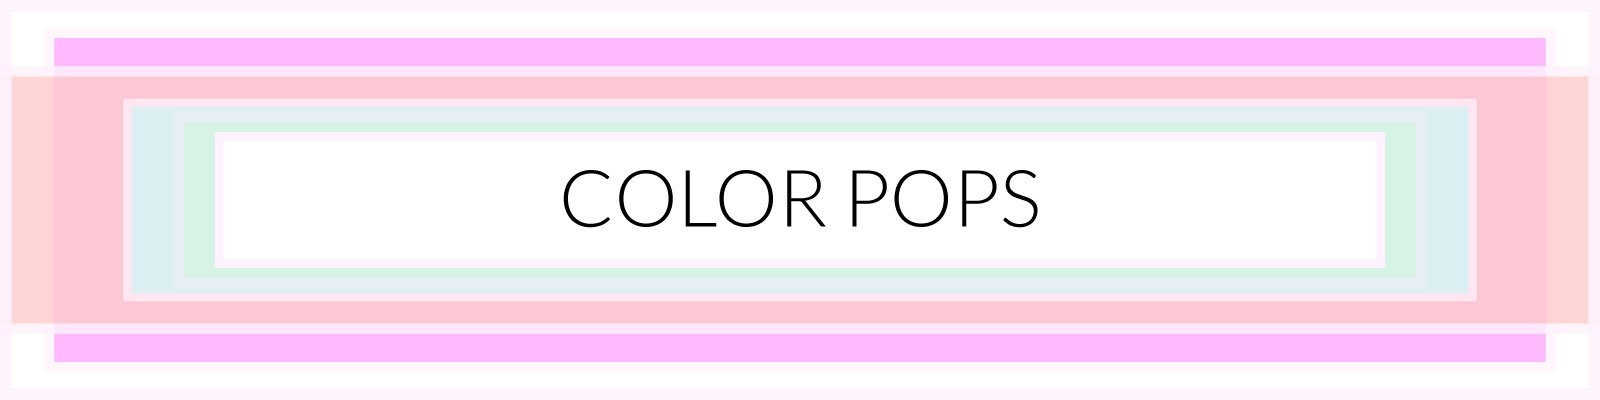 Color Pops